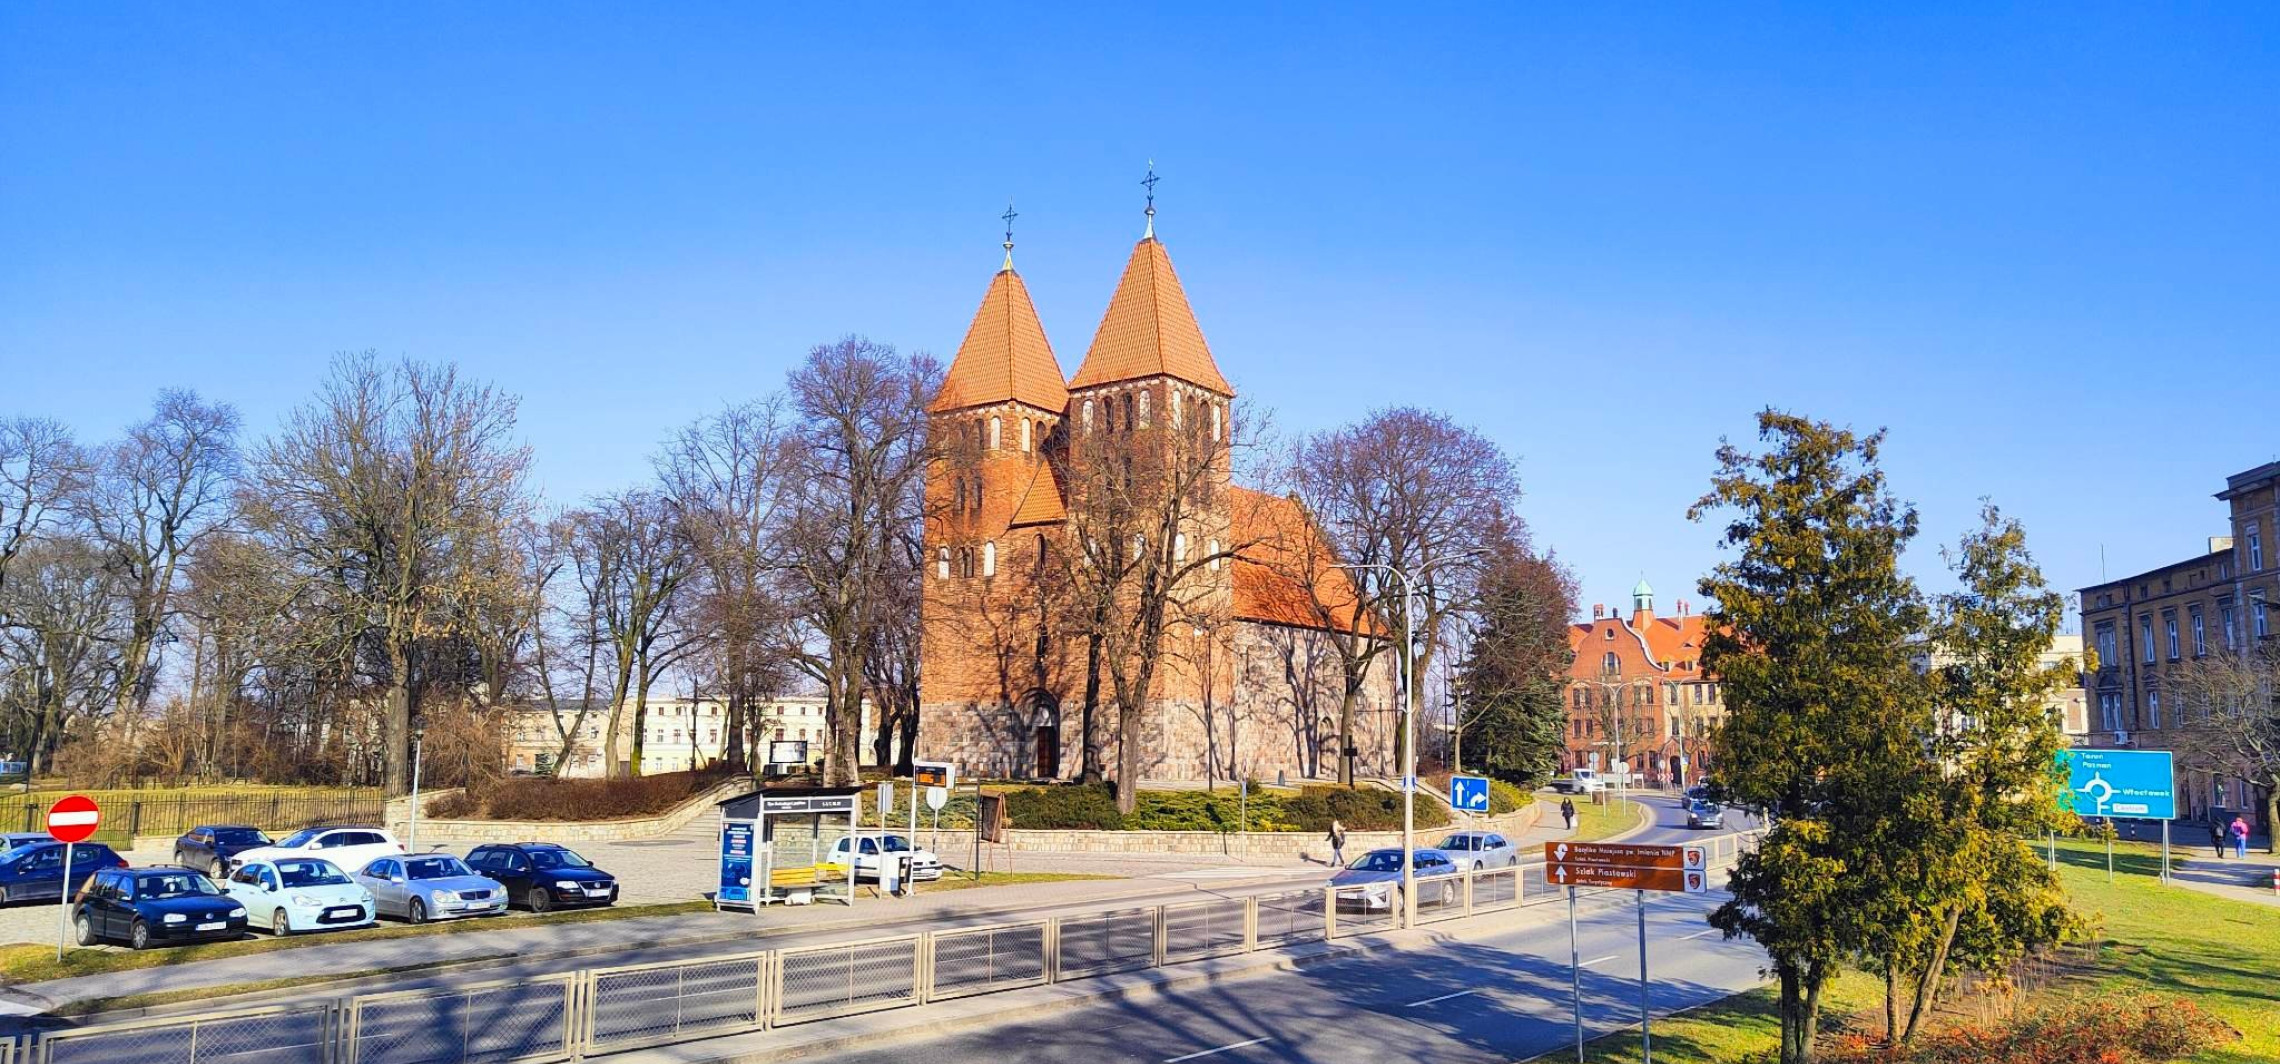 Inowrocław - Powiat wyda 1,3 mln na remont kościołów. Co się zmieni? 